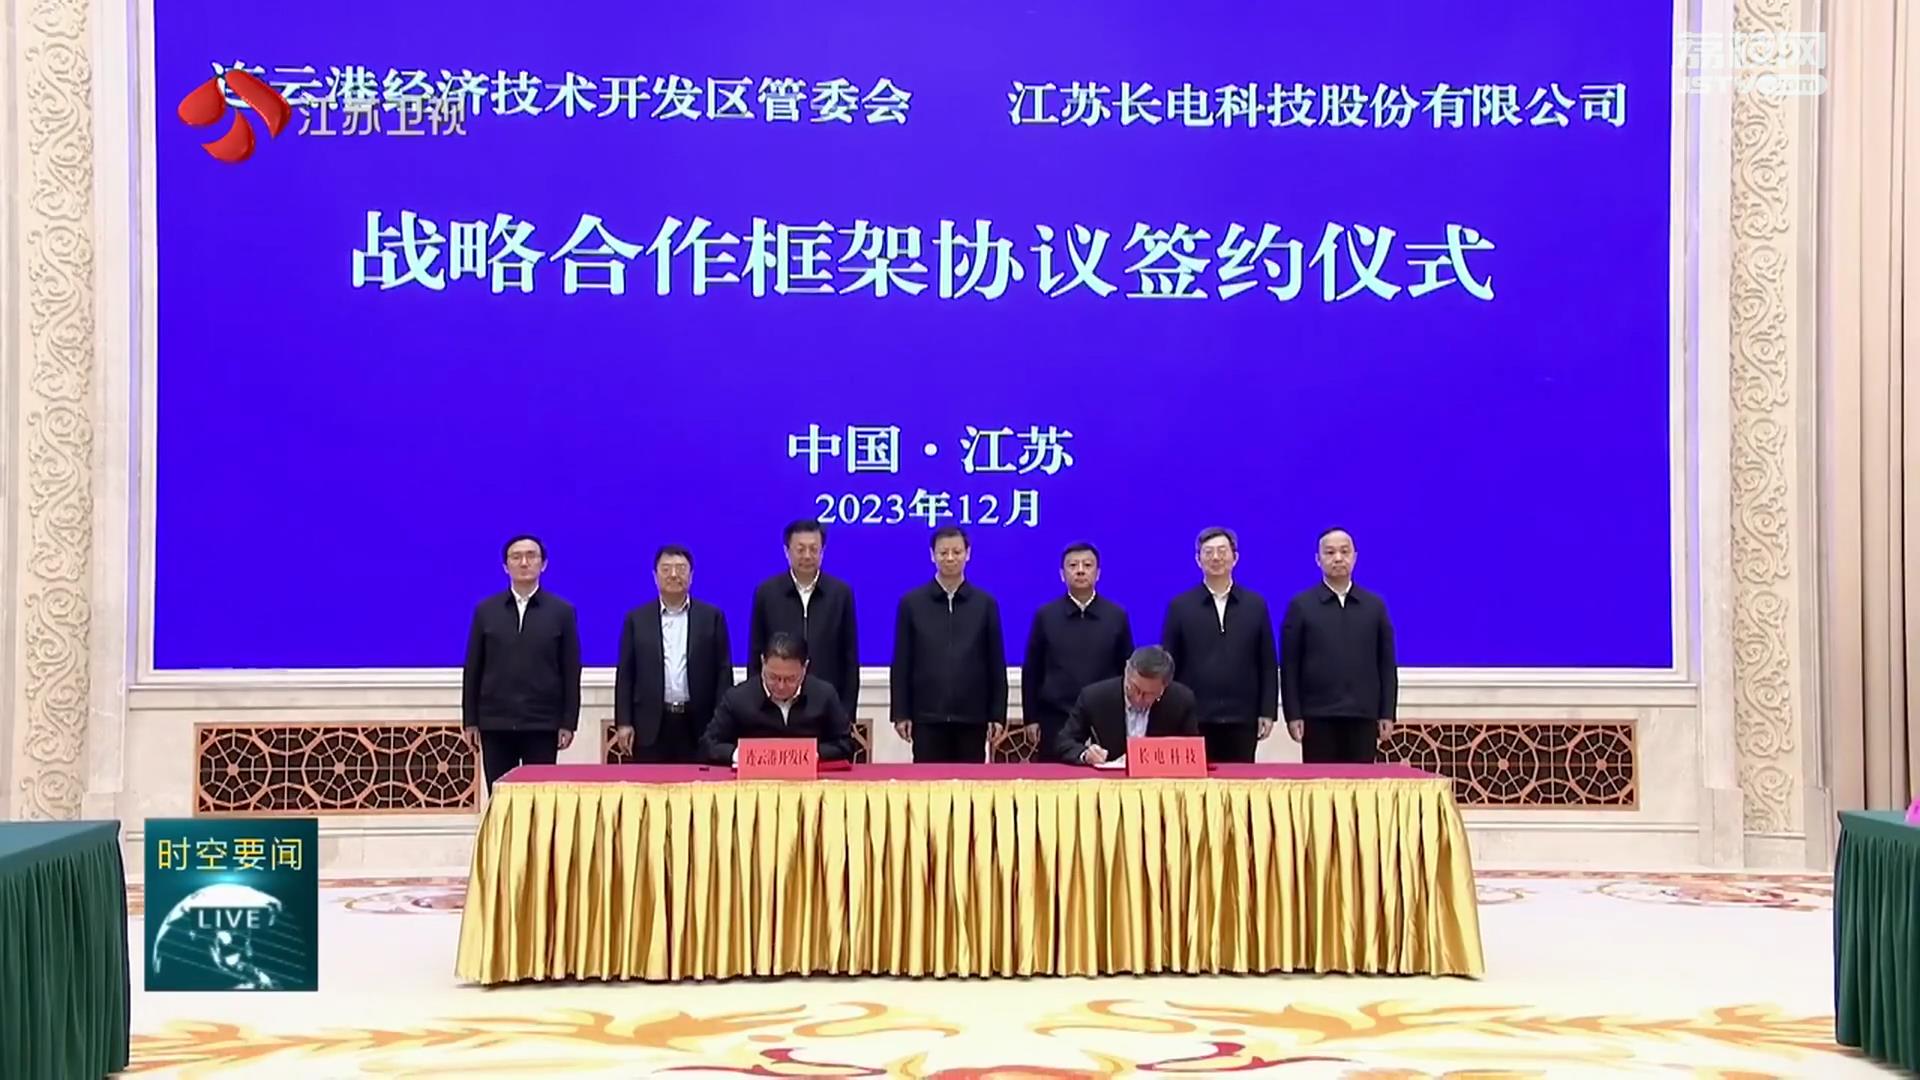 连云港经济技术开发区与长电科技签署战略合作协议 许昆林出席并见证签约